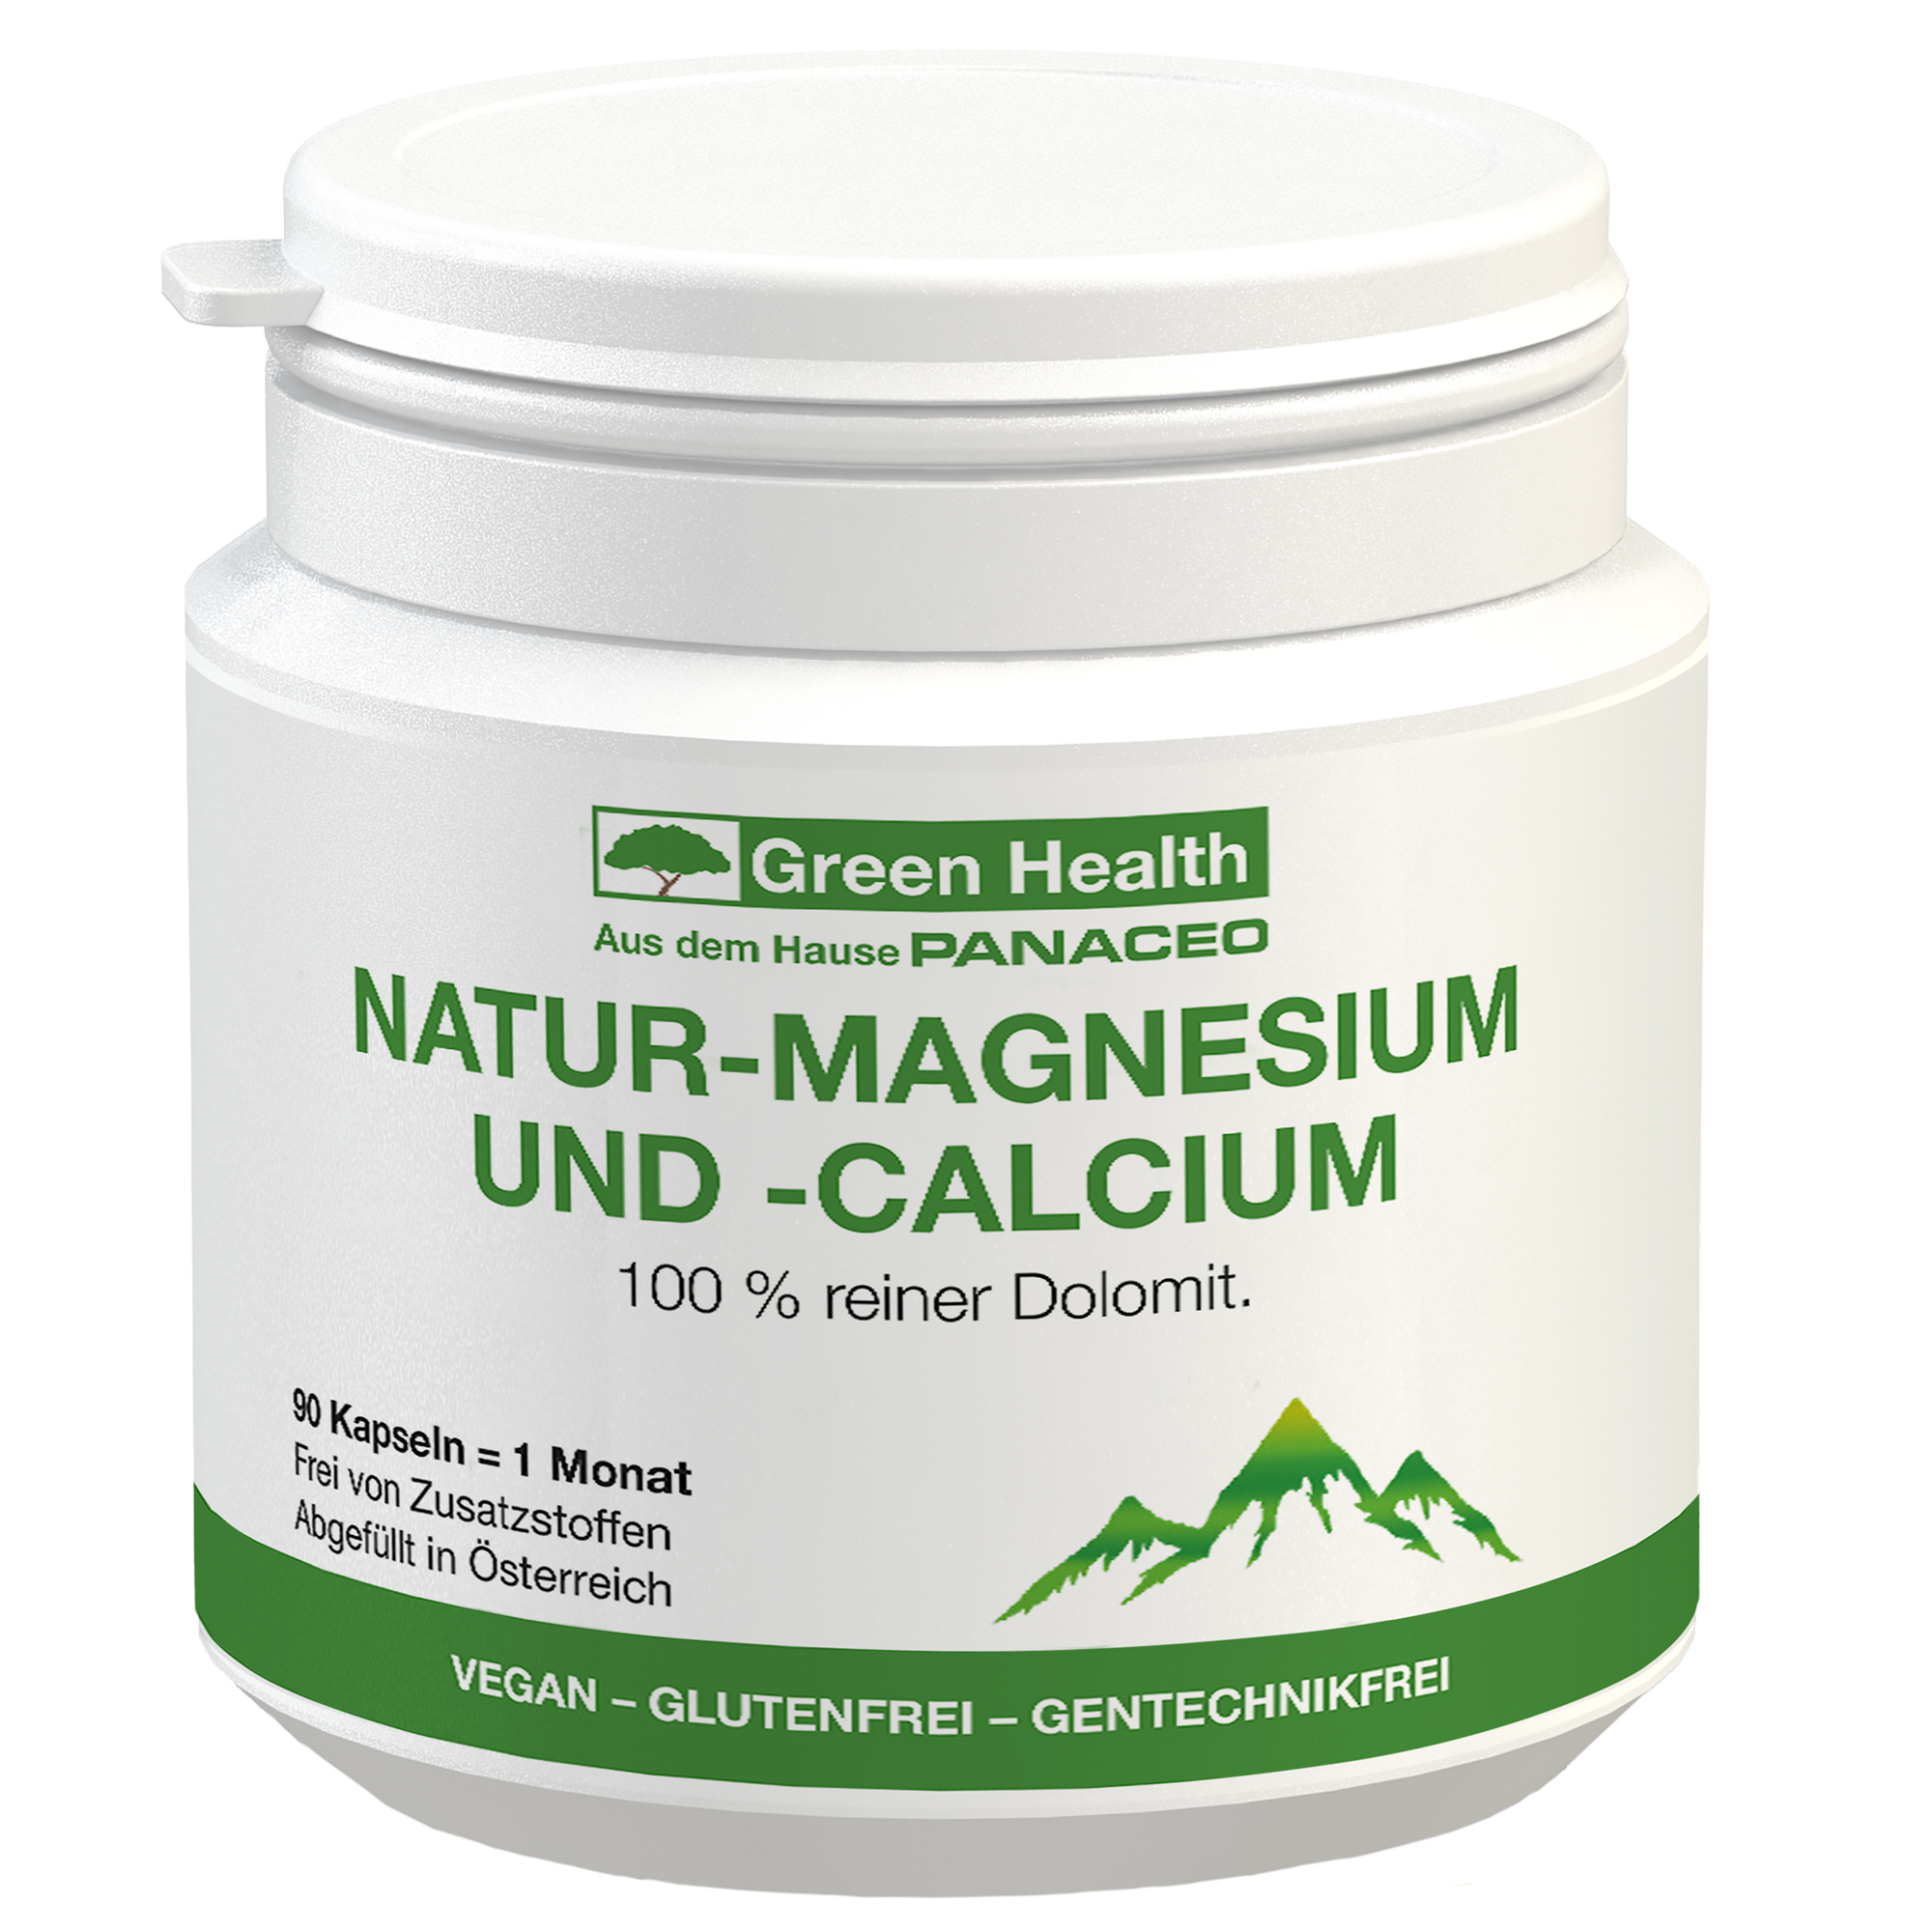 Green Health NATUR-MAGNESIUM UND -CALCIUM